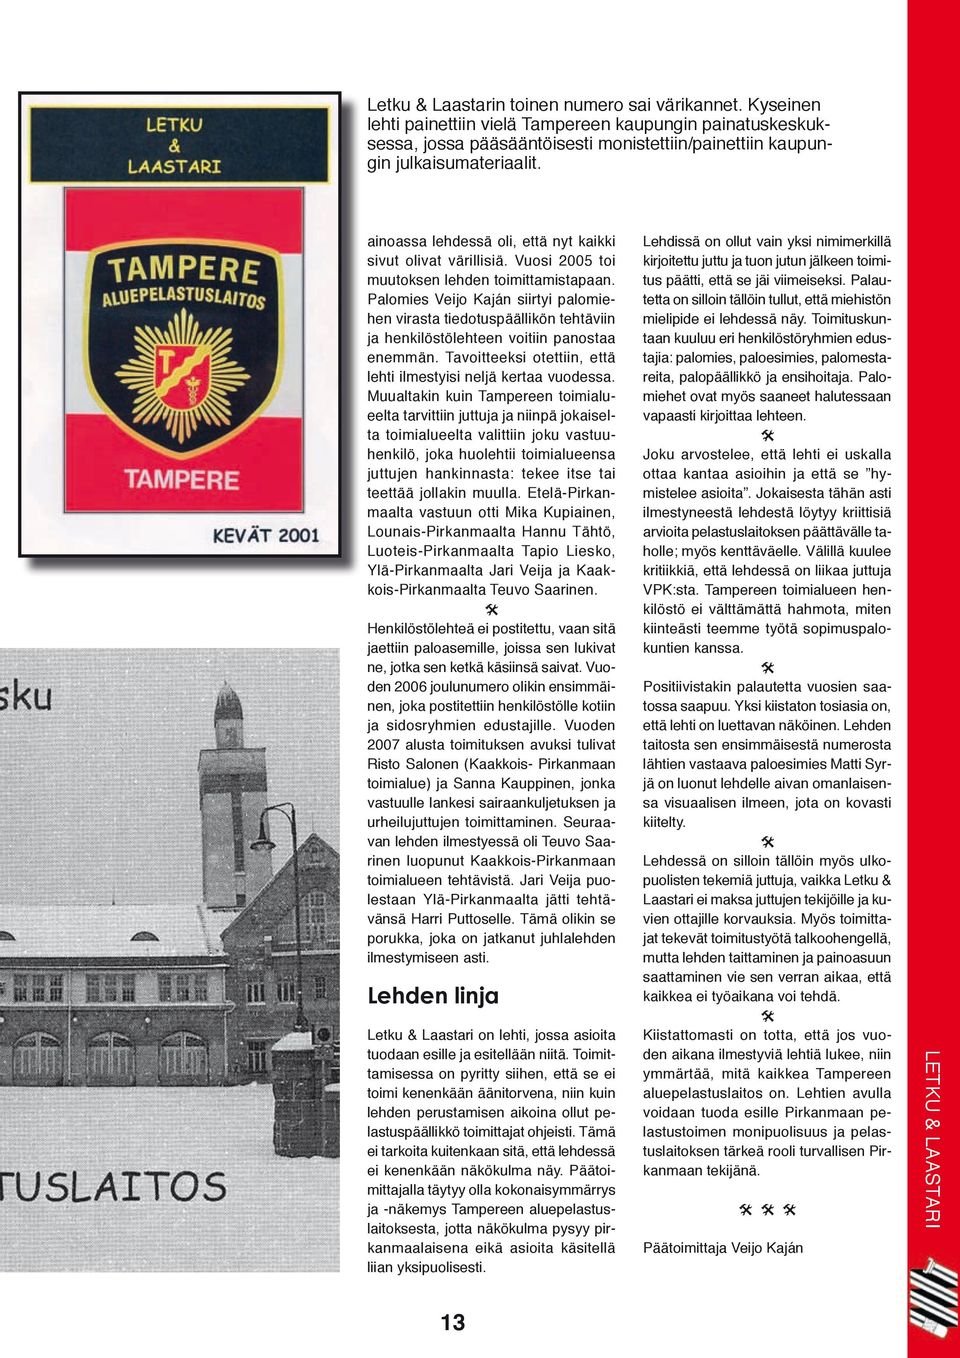 Palomies Veijo Kaján siirtyi palomiehen virasta tiedotuspäällikön tehtäviin ja henkilöstölehteen voitiin panostaa enemmän. Tavoitteeksi otettiin, että lehti ilmestyisi neljä kertaa vuodessa.